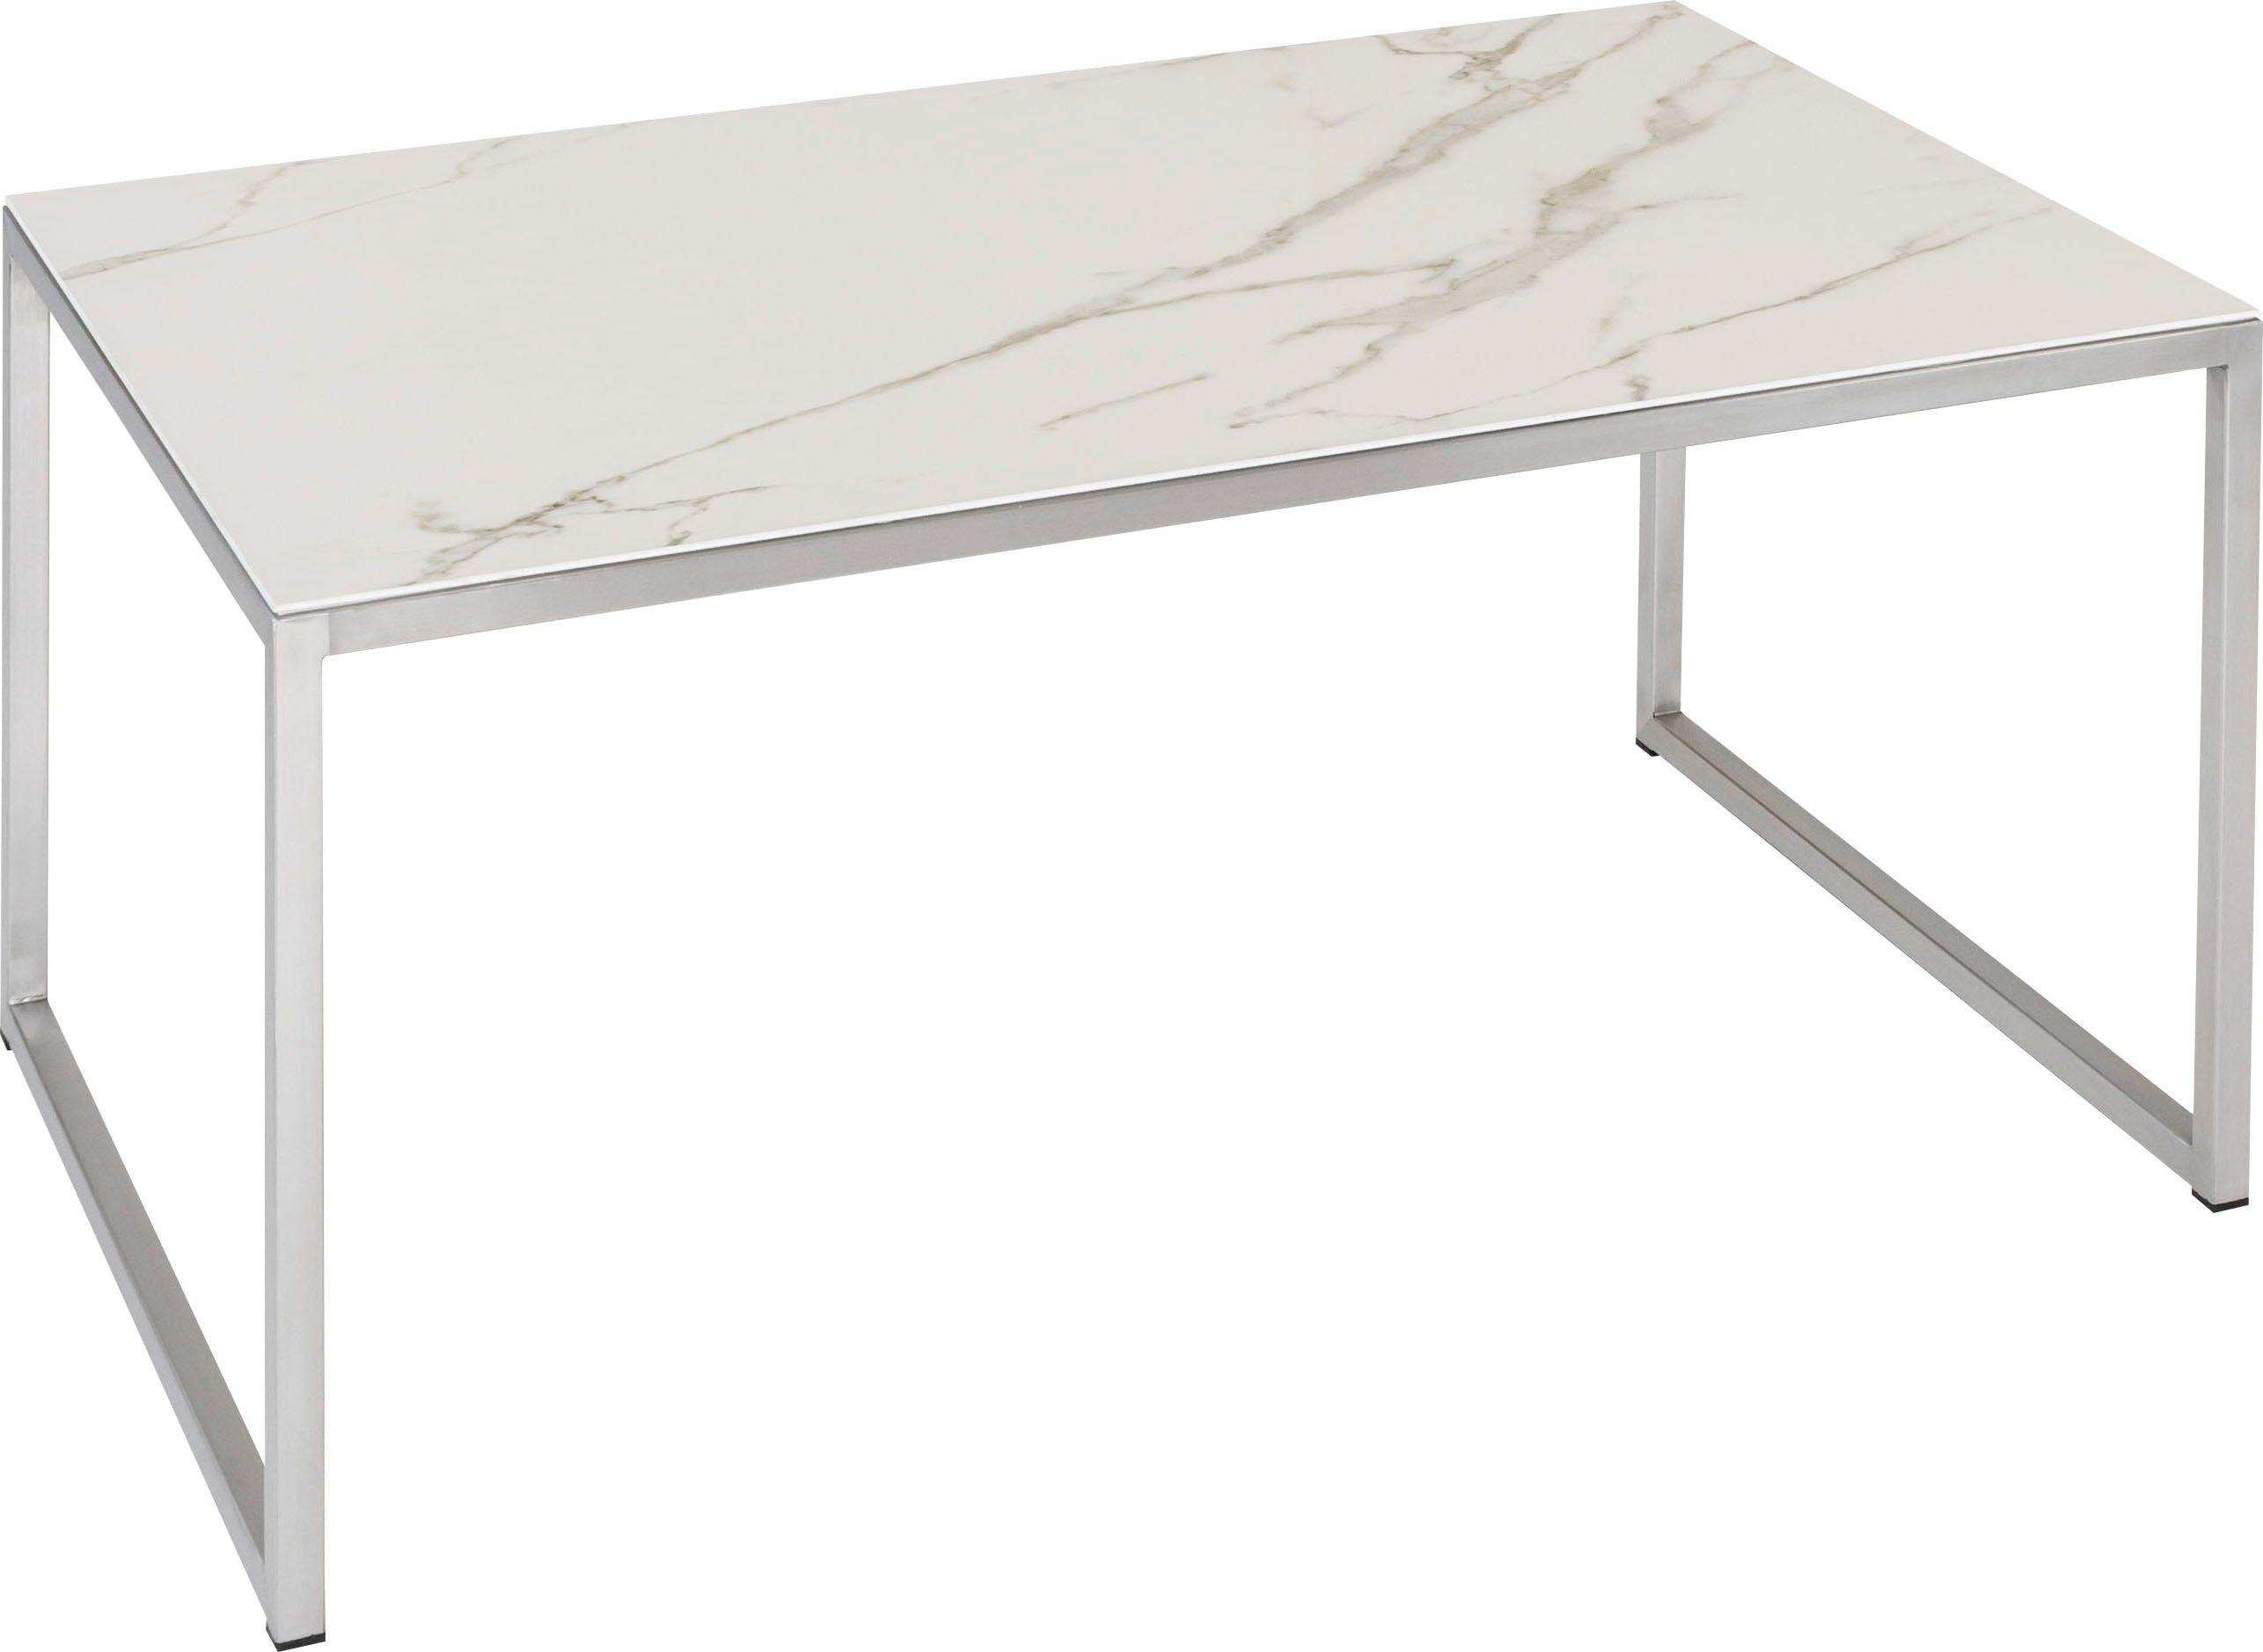 Henke Möbel Couchtisch, Tischplatte aus hochwertiger Keramik, jeder Tisch  ein Unikat in der Musterung online kaufen | OTTO